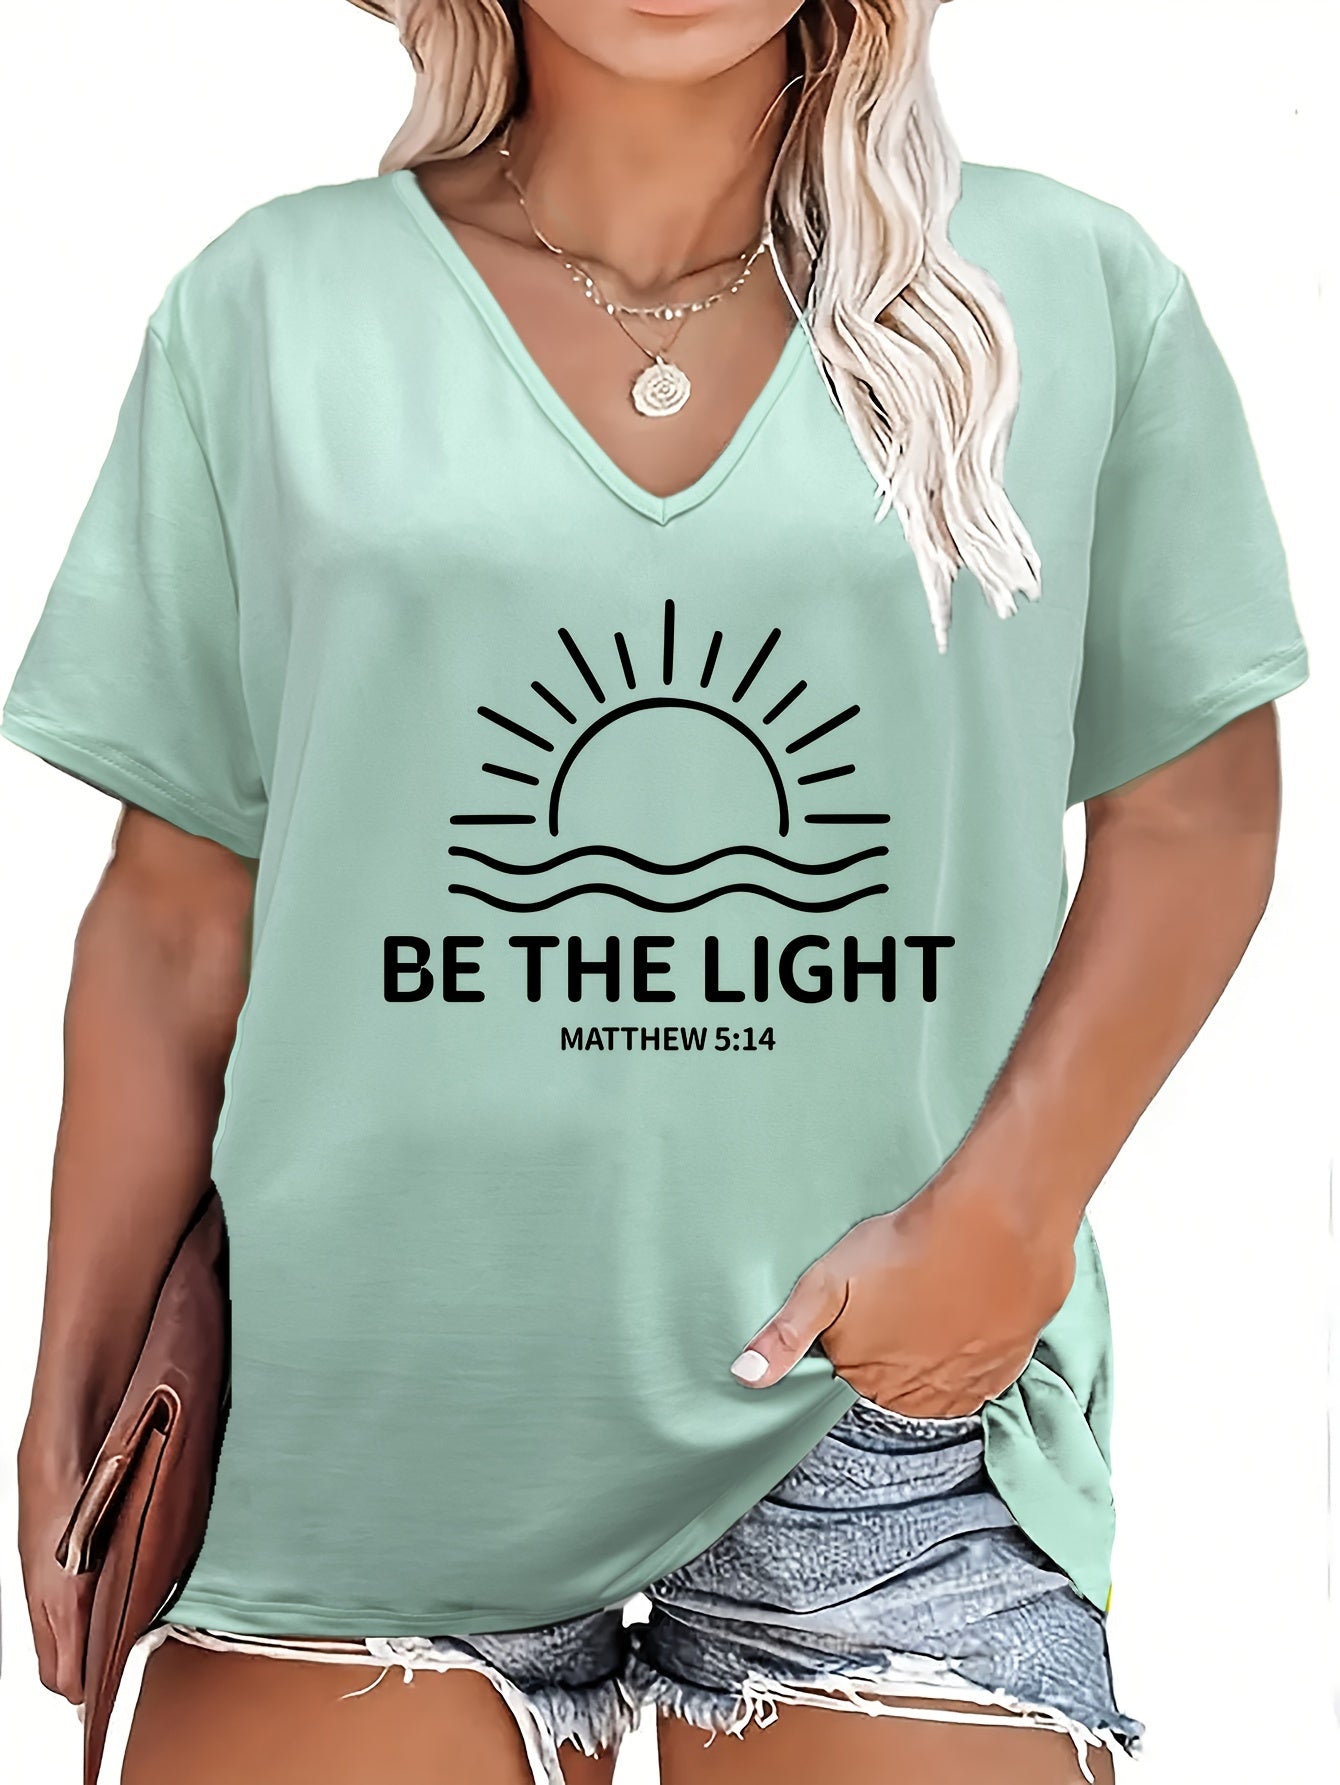 Be The Light Plus Size Women's Christian T-Shirt claimedbygoddesigns